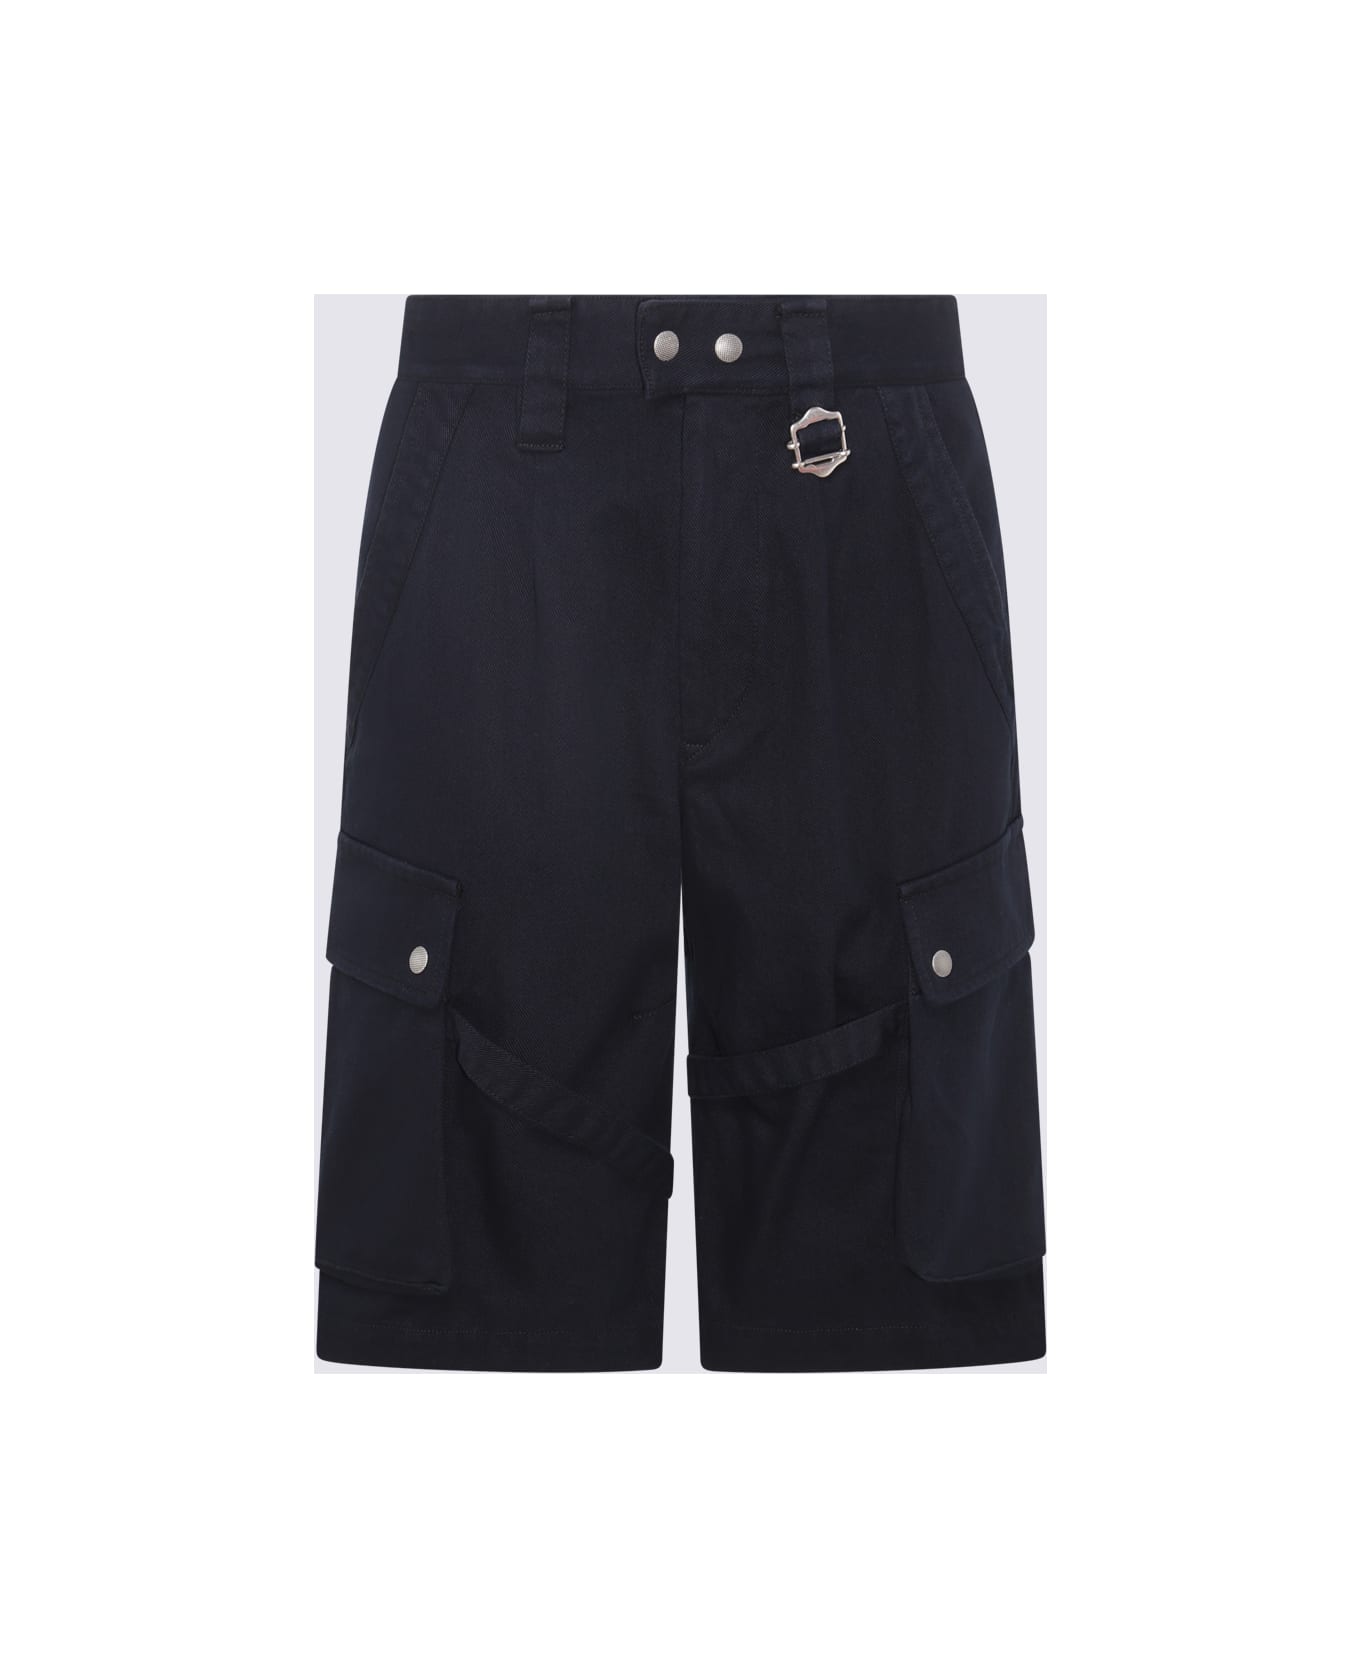 Isabel Marant Black Cotton Cargo Shorts - Black